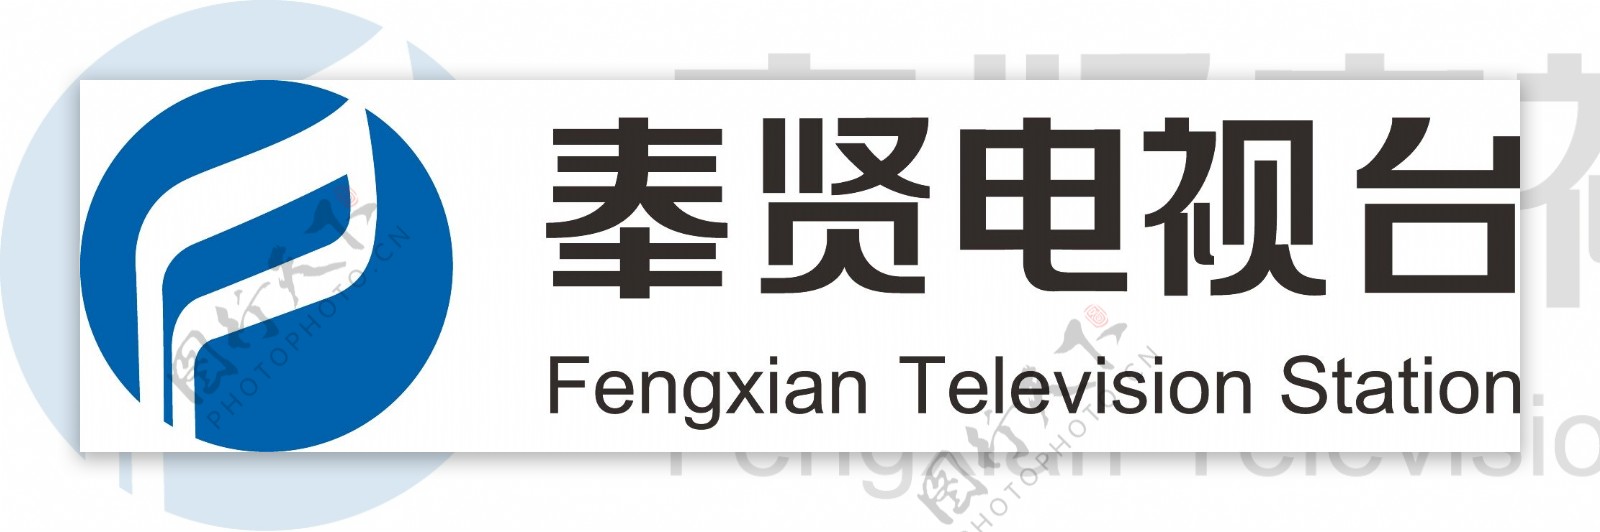 奉贤电视台logo图片